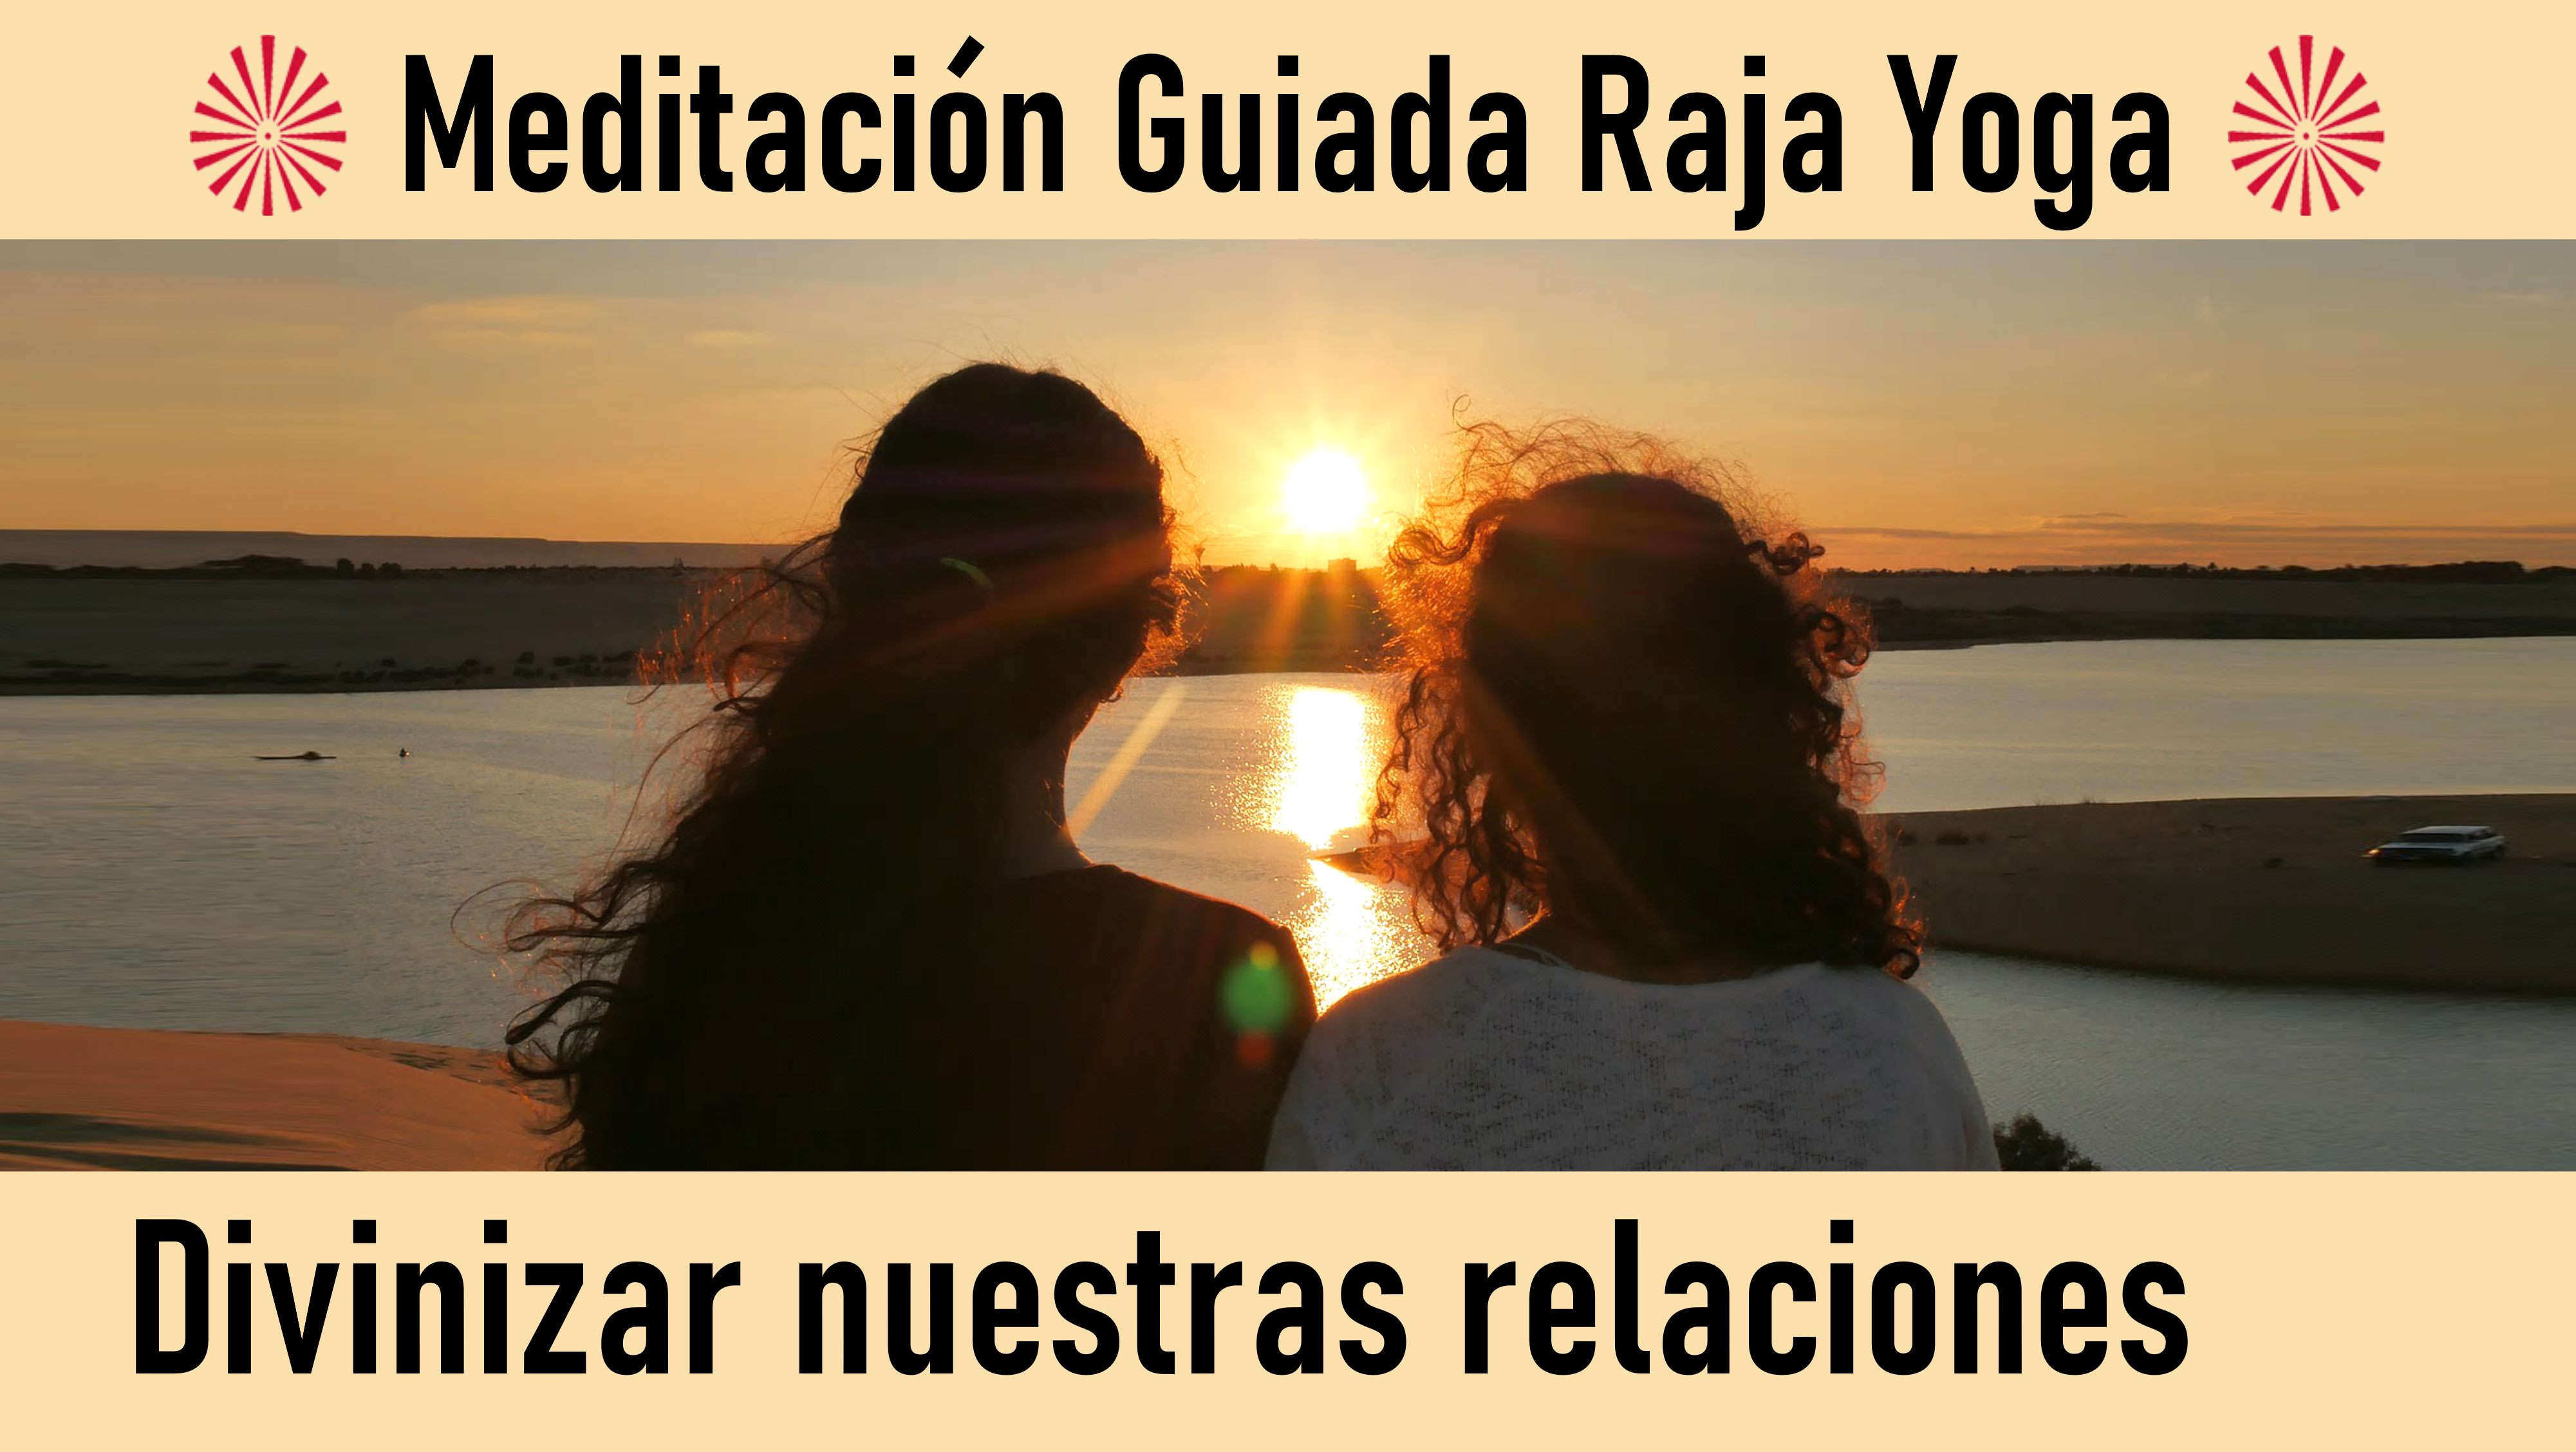 17 Julio 2020 Meditación guiada: Divinizar nuestras relaciones